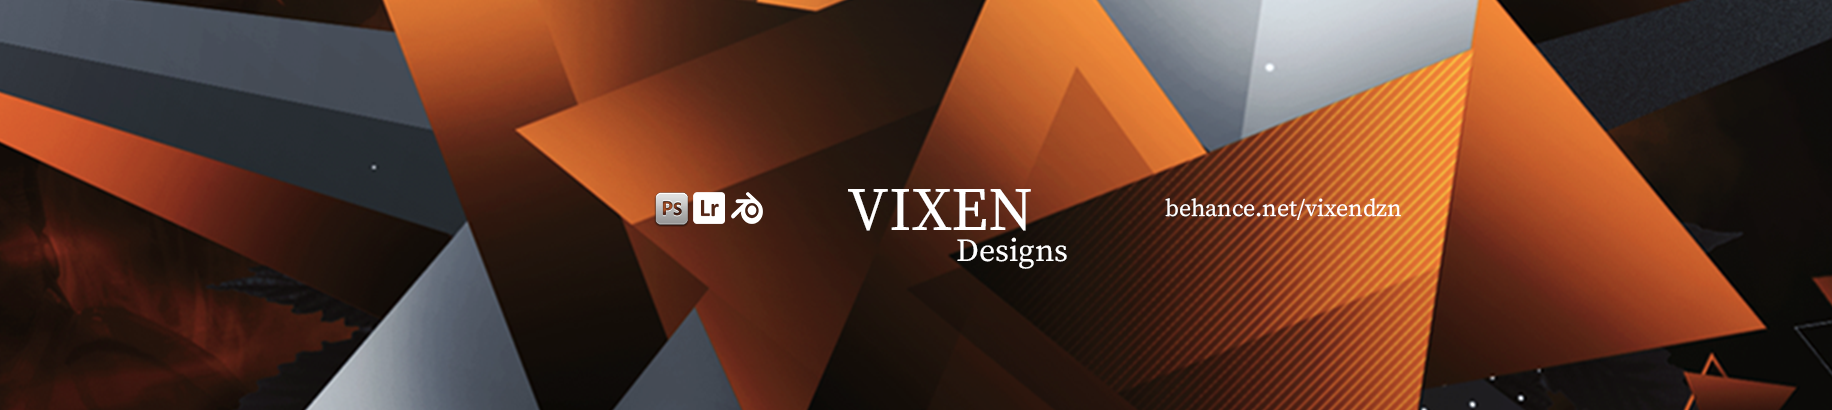 Vixen Creates's profile banner